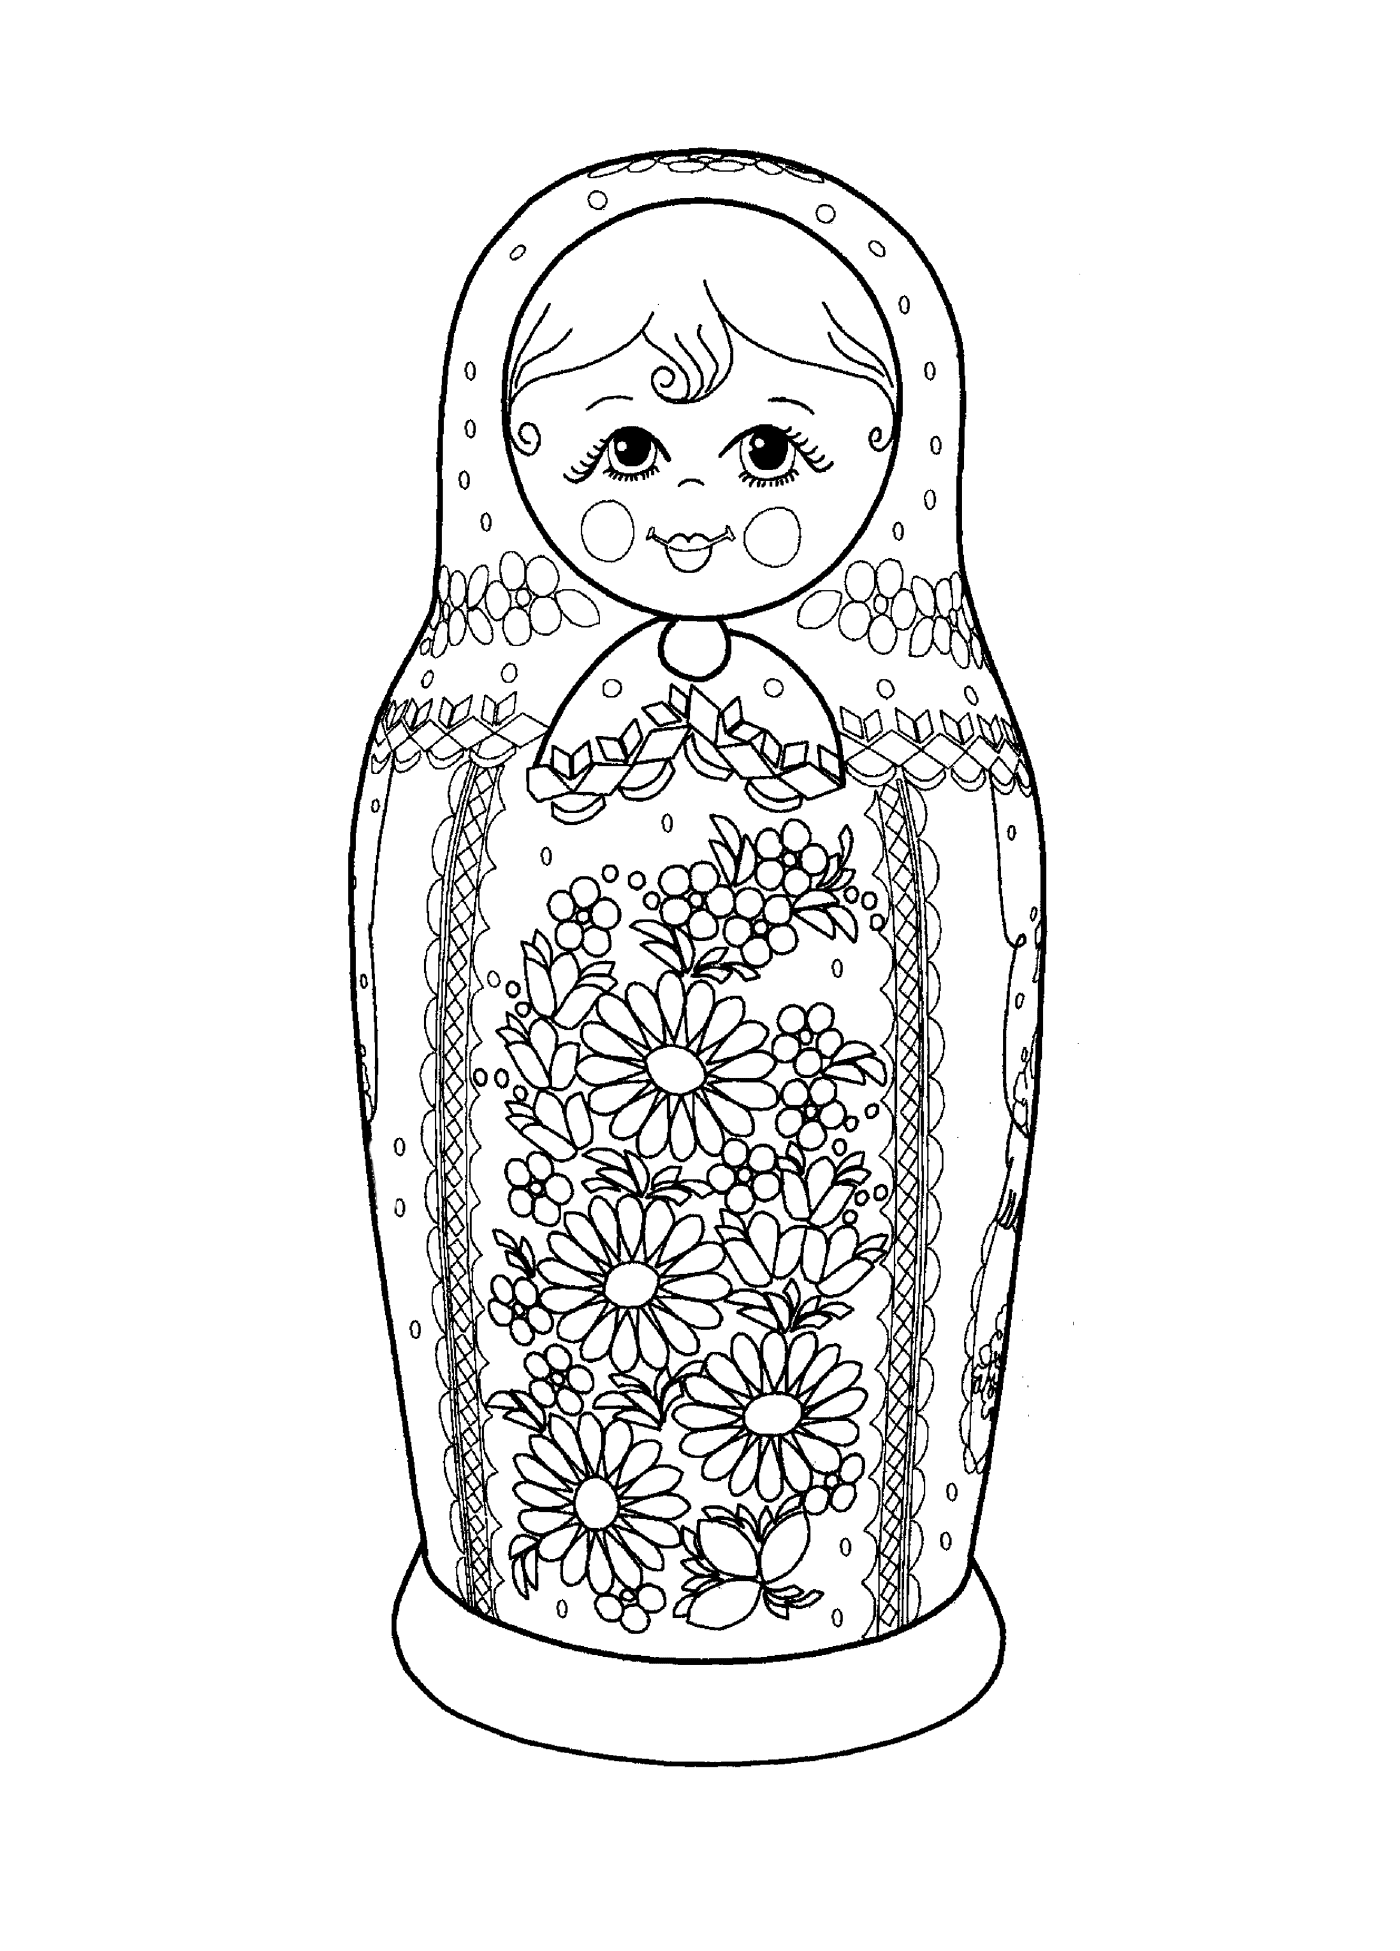  Traditionelle russische Matrjoschka Puppe 